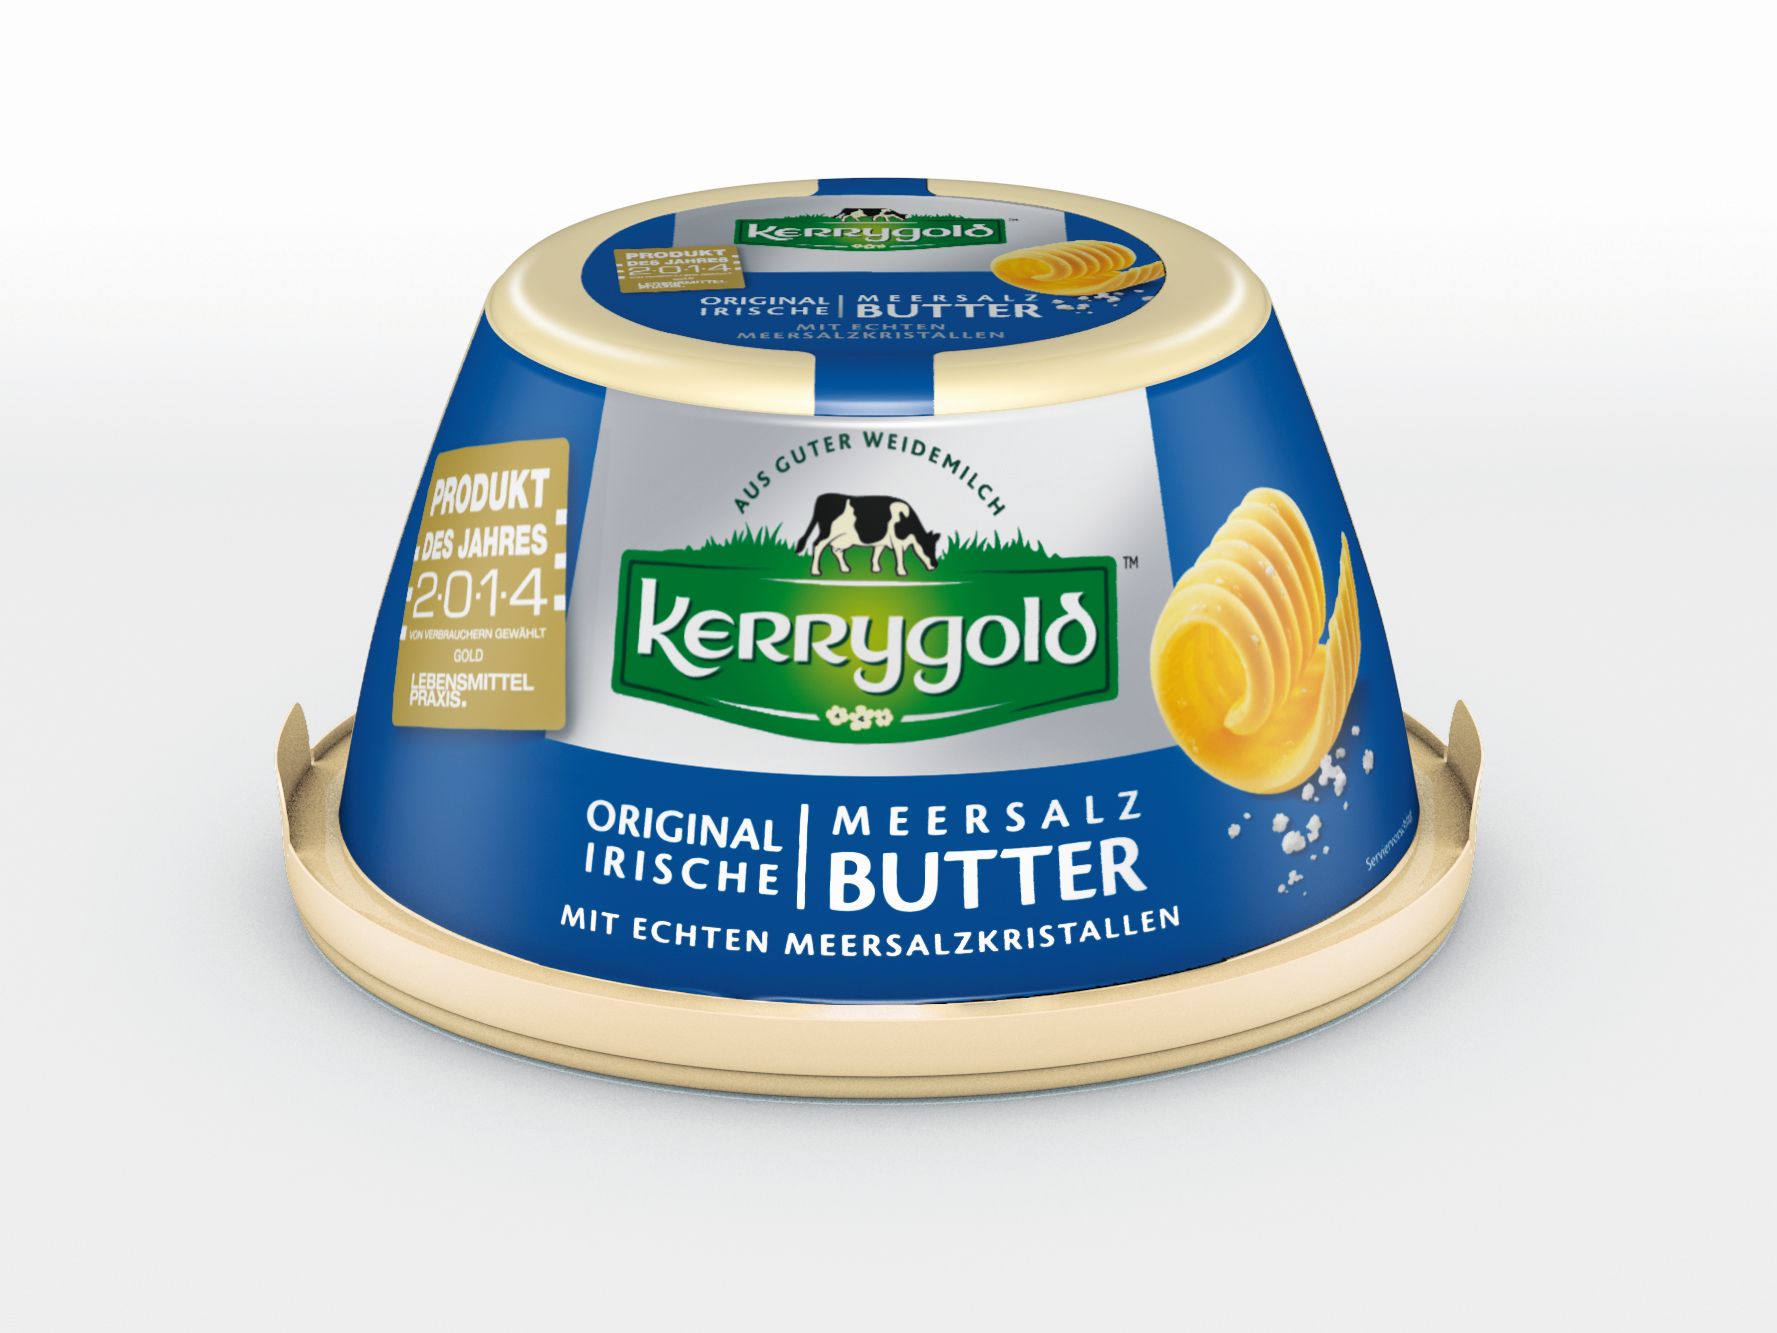 Kerrygold Meersalz-Butter